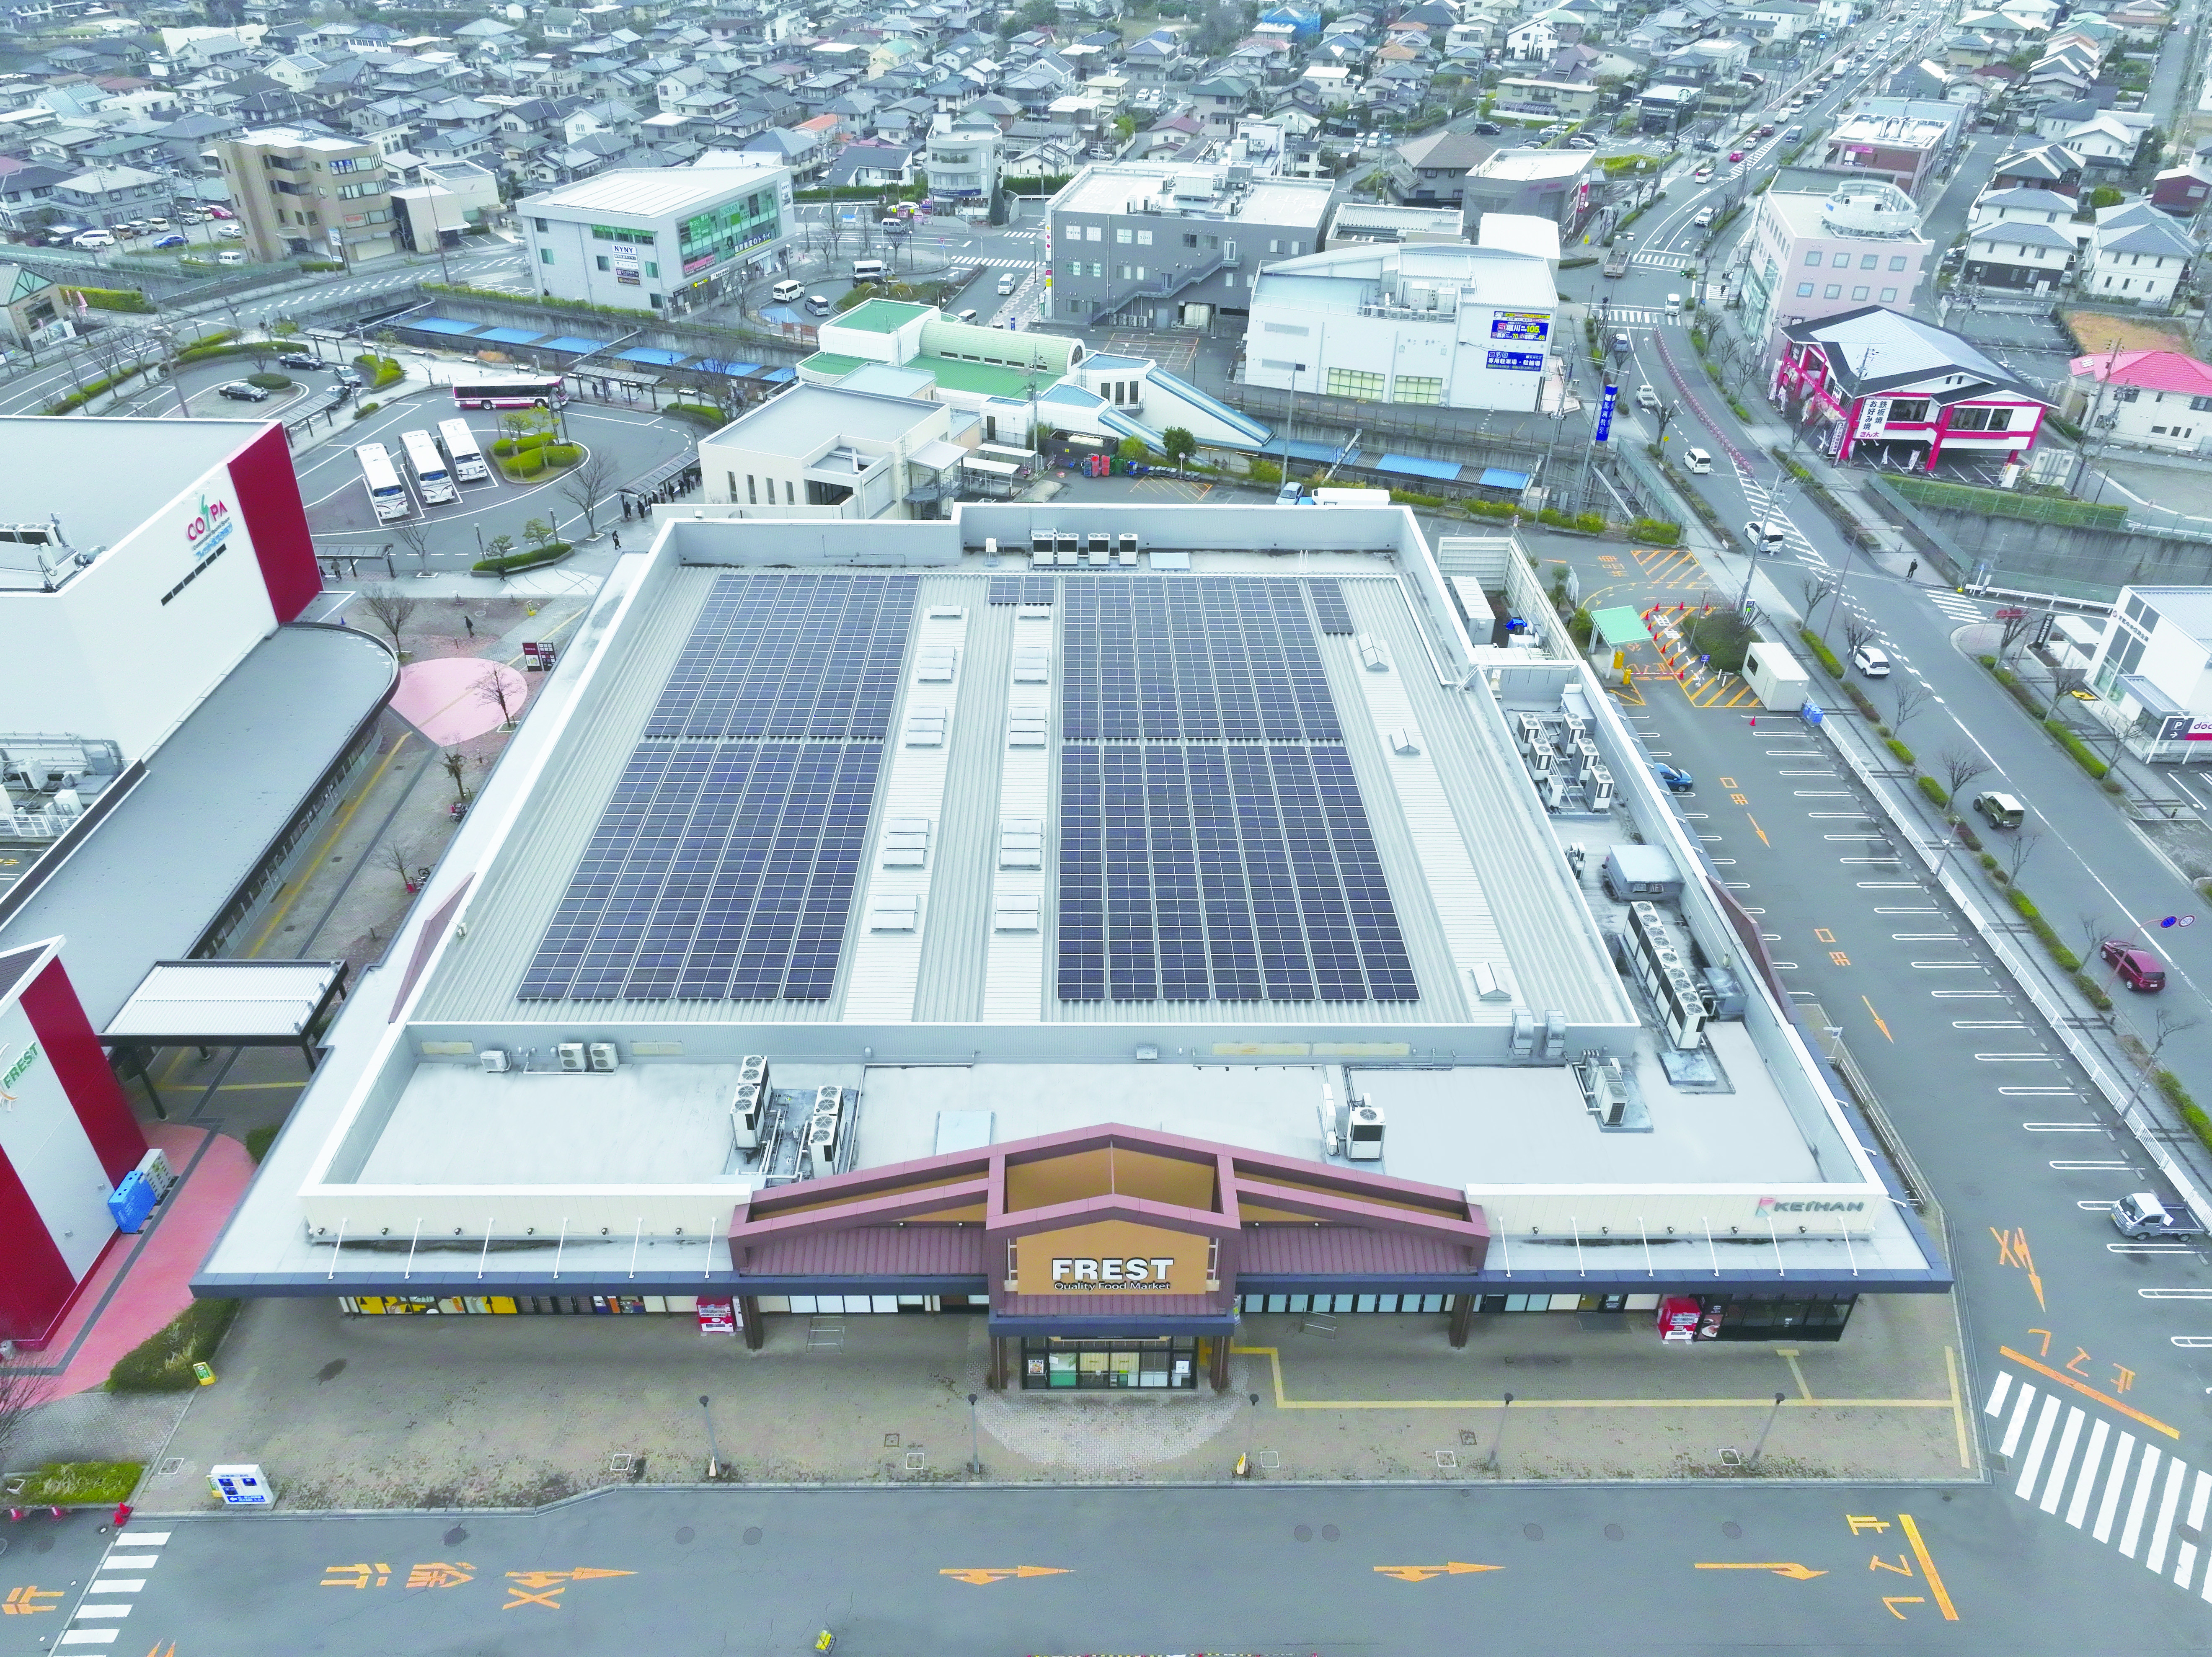 スーパーマーケット「フレスト松井山手店」に太陽光発電設備を導入